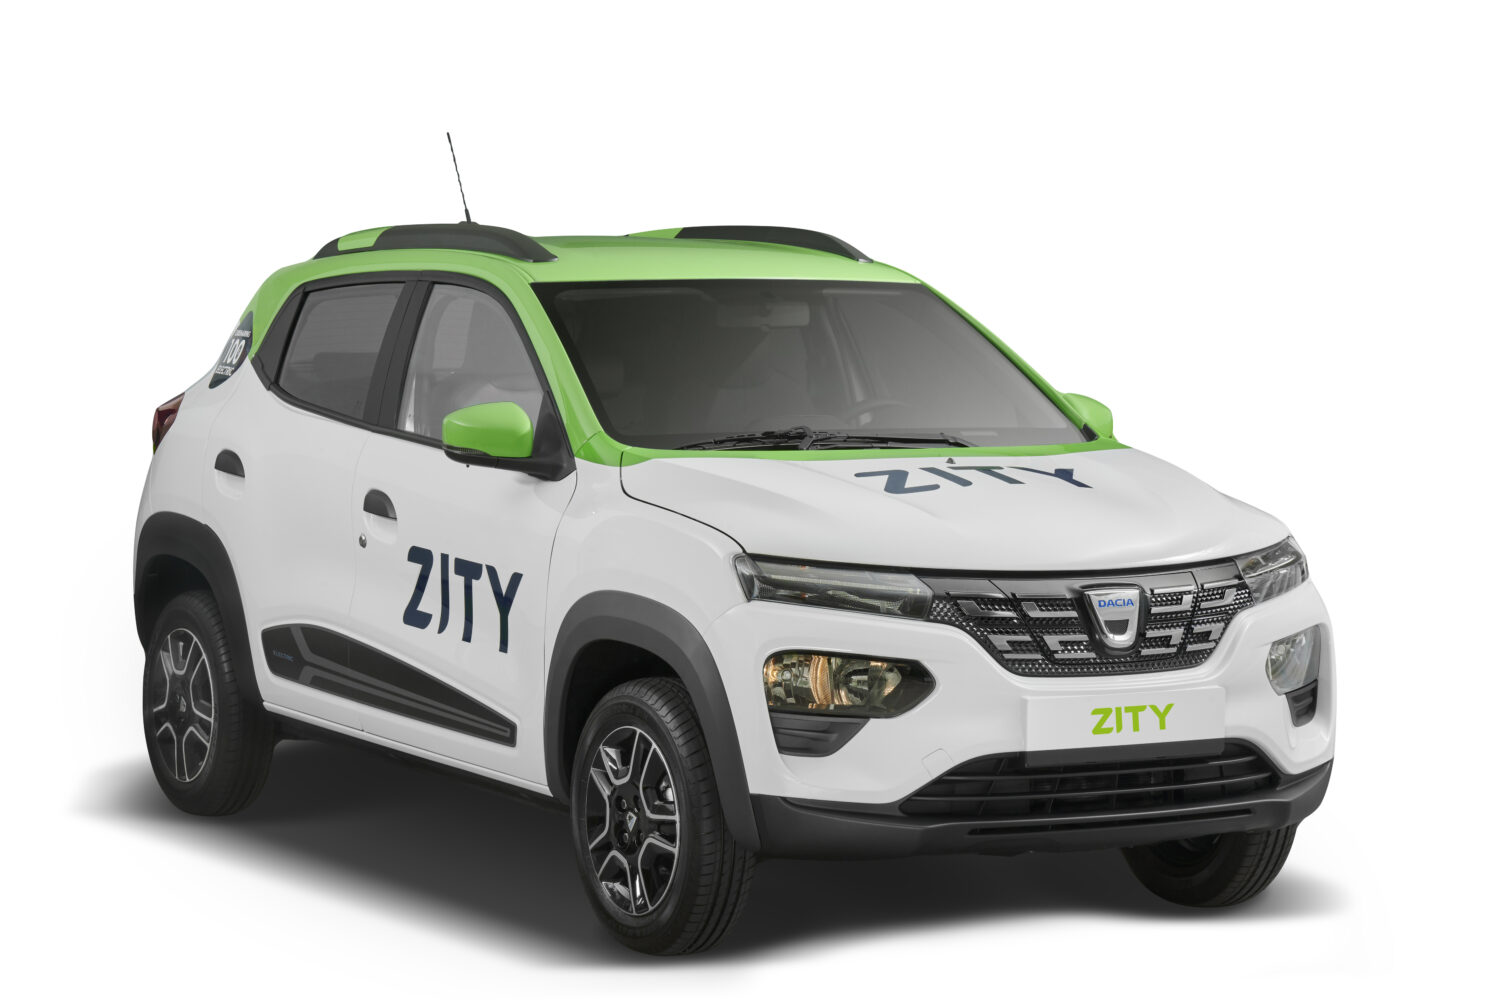 2021 - Dacia Spring and Zity Paris